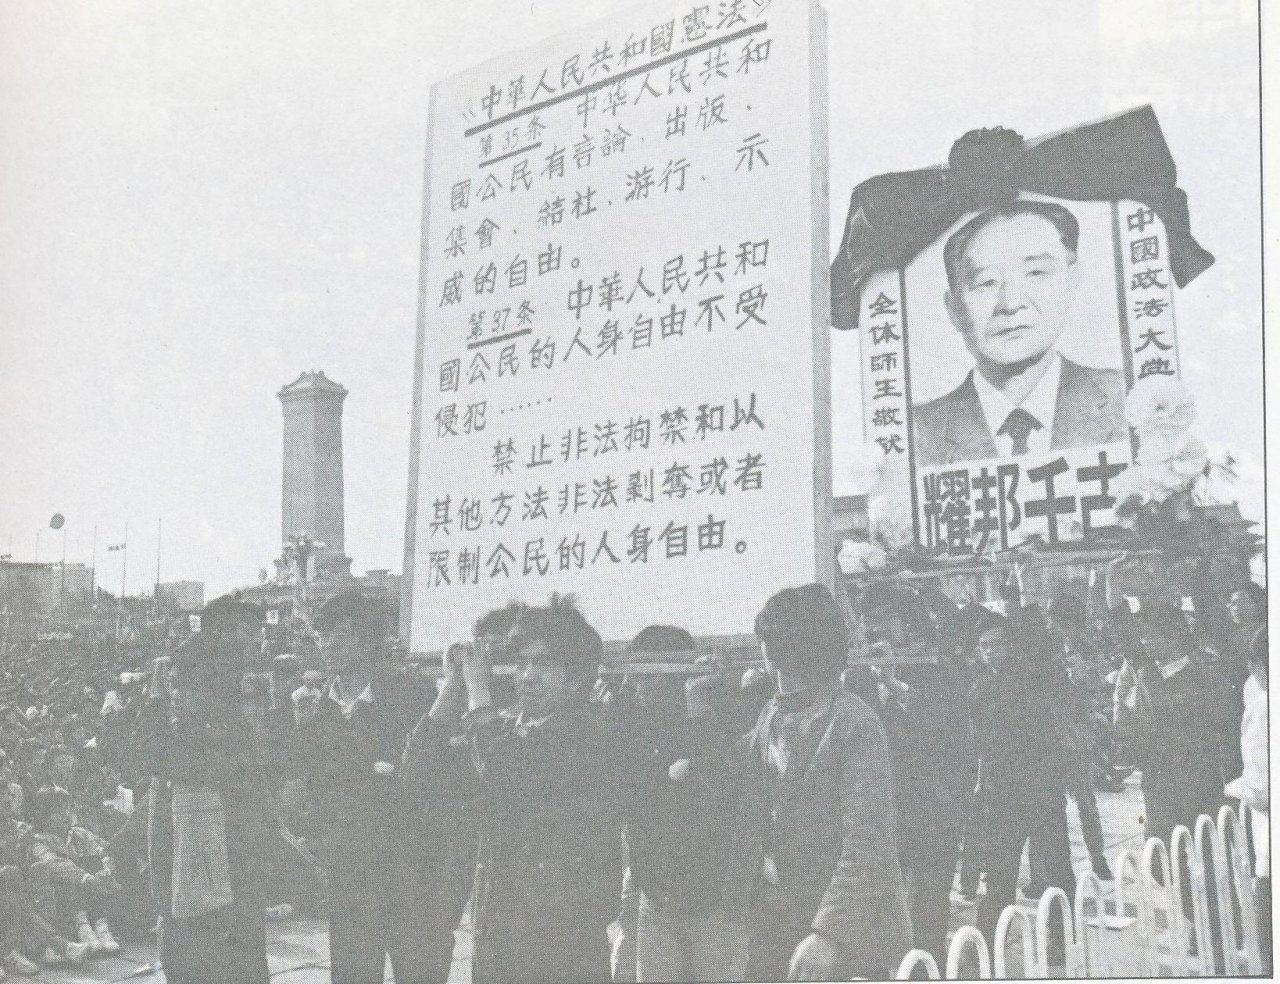 我的一九八九系列》胡耀邦追悼會 北京高校學生首次聯合行動